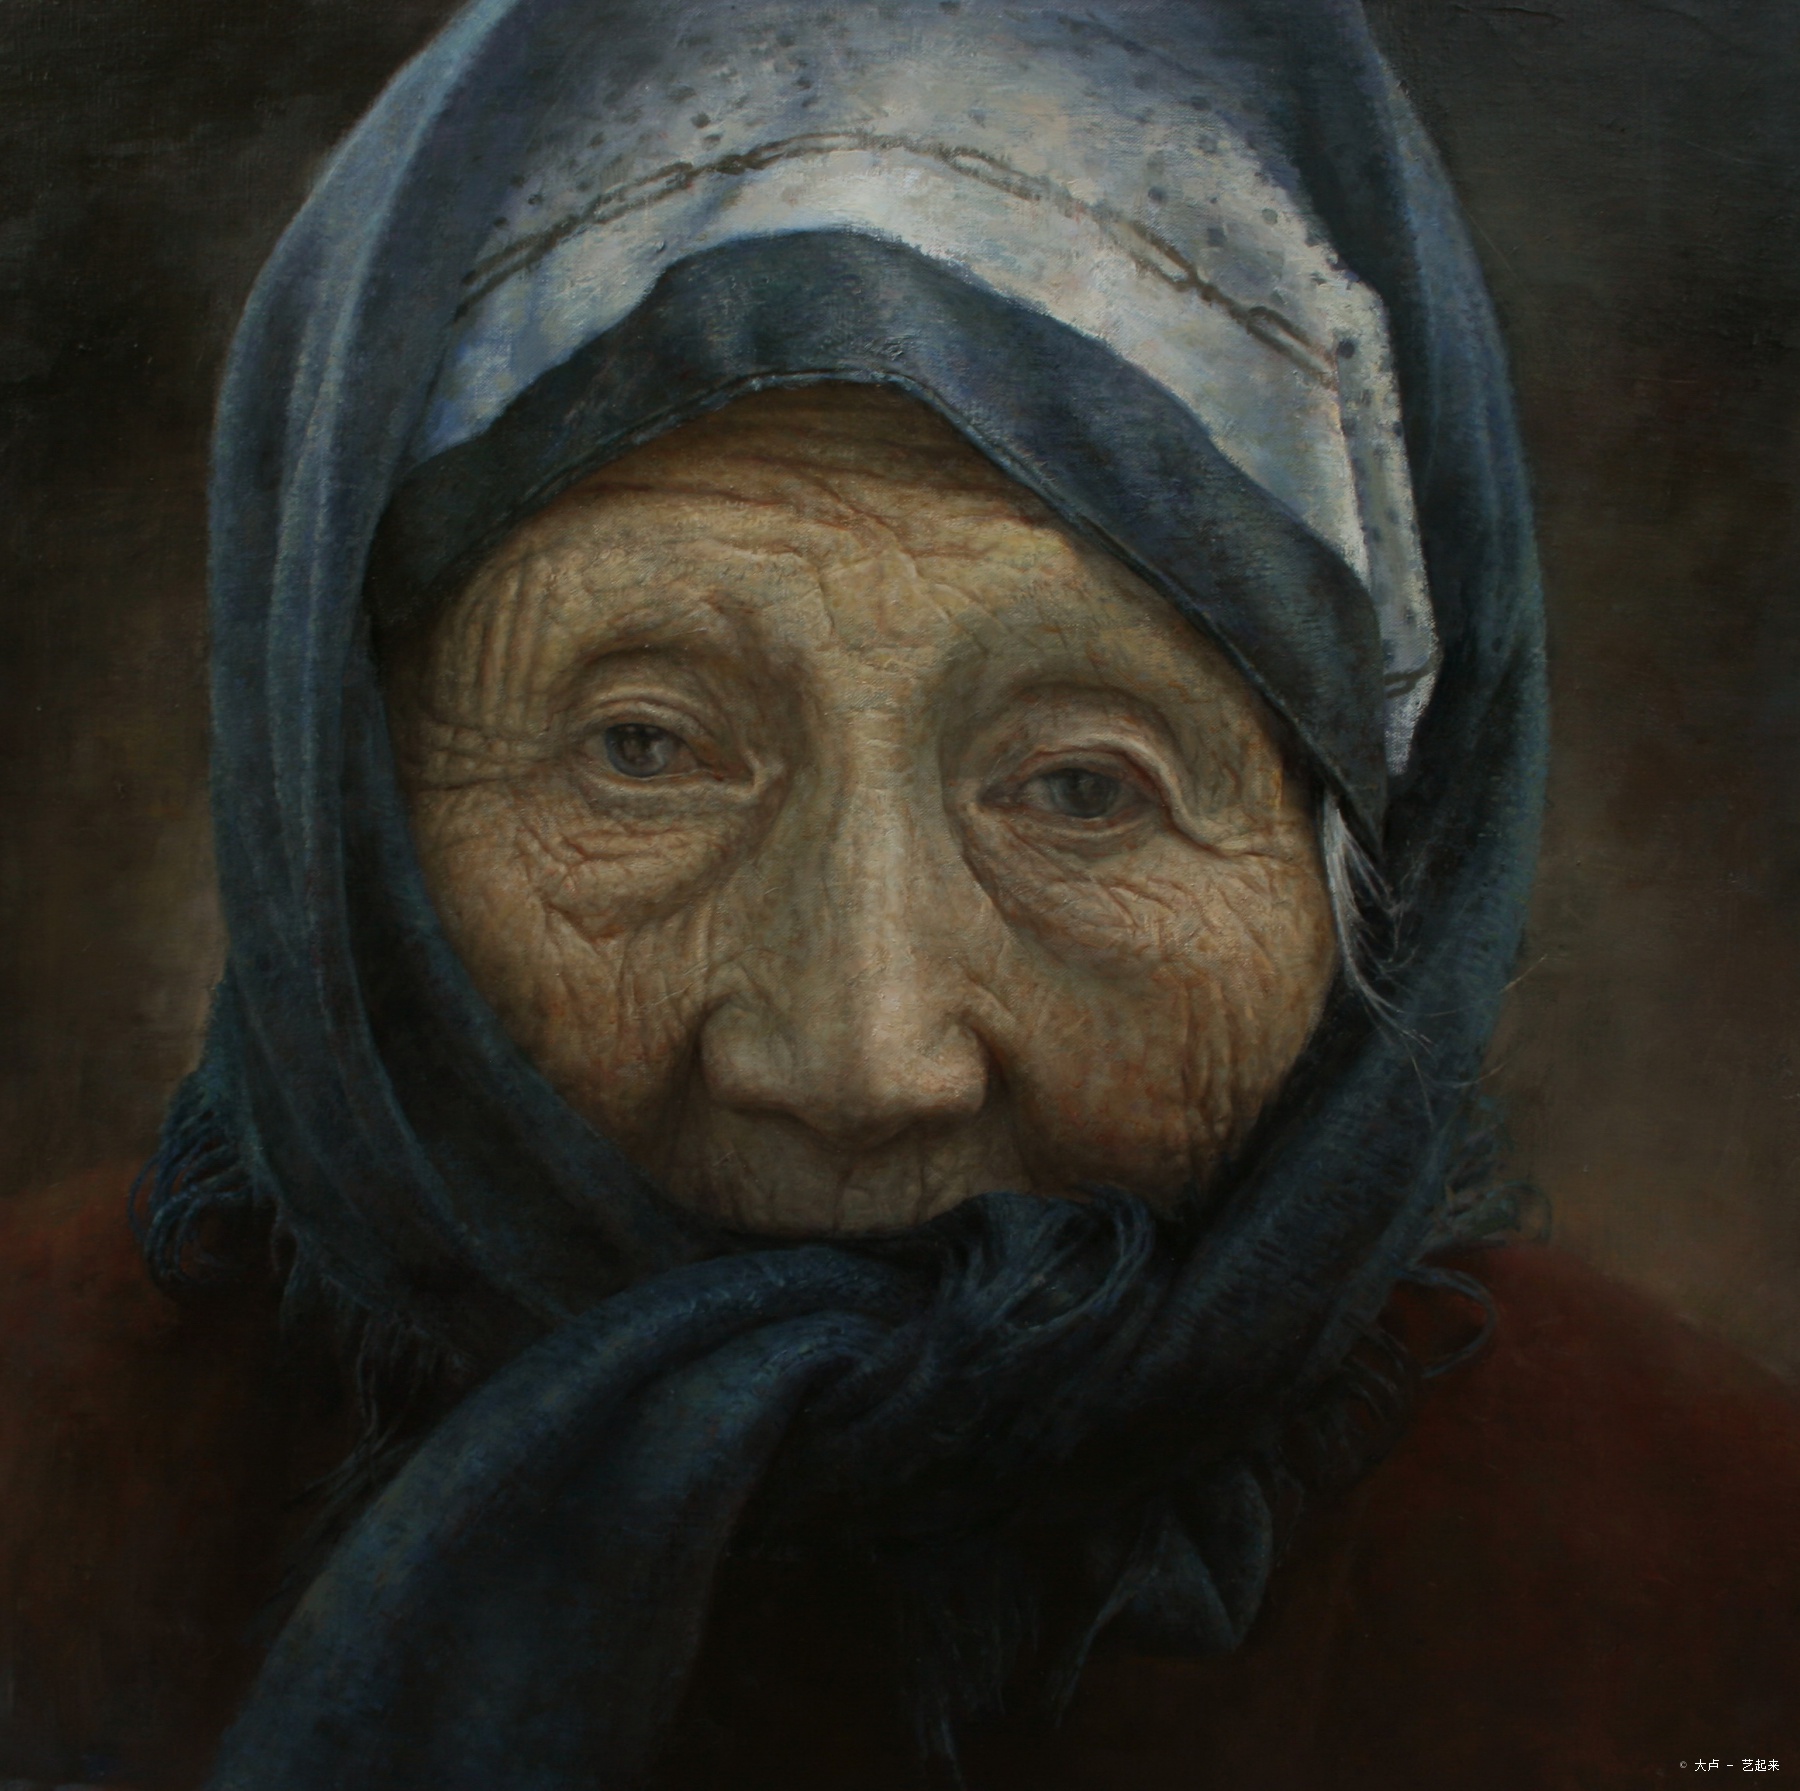 老人肖像,大卢, 2016年布面油画 